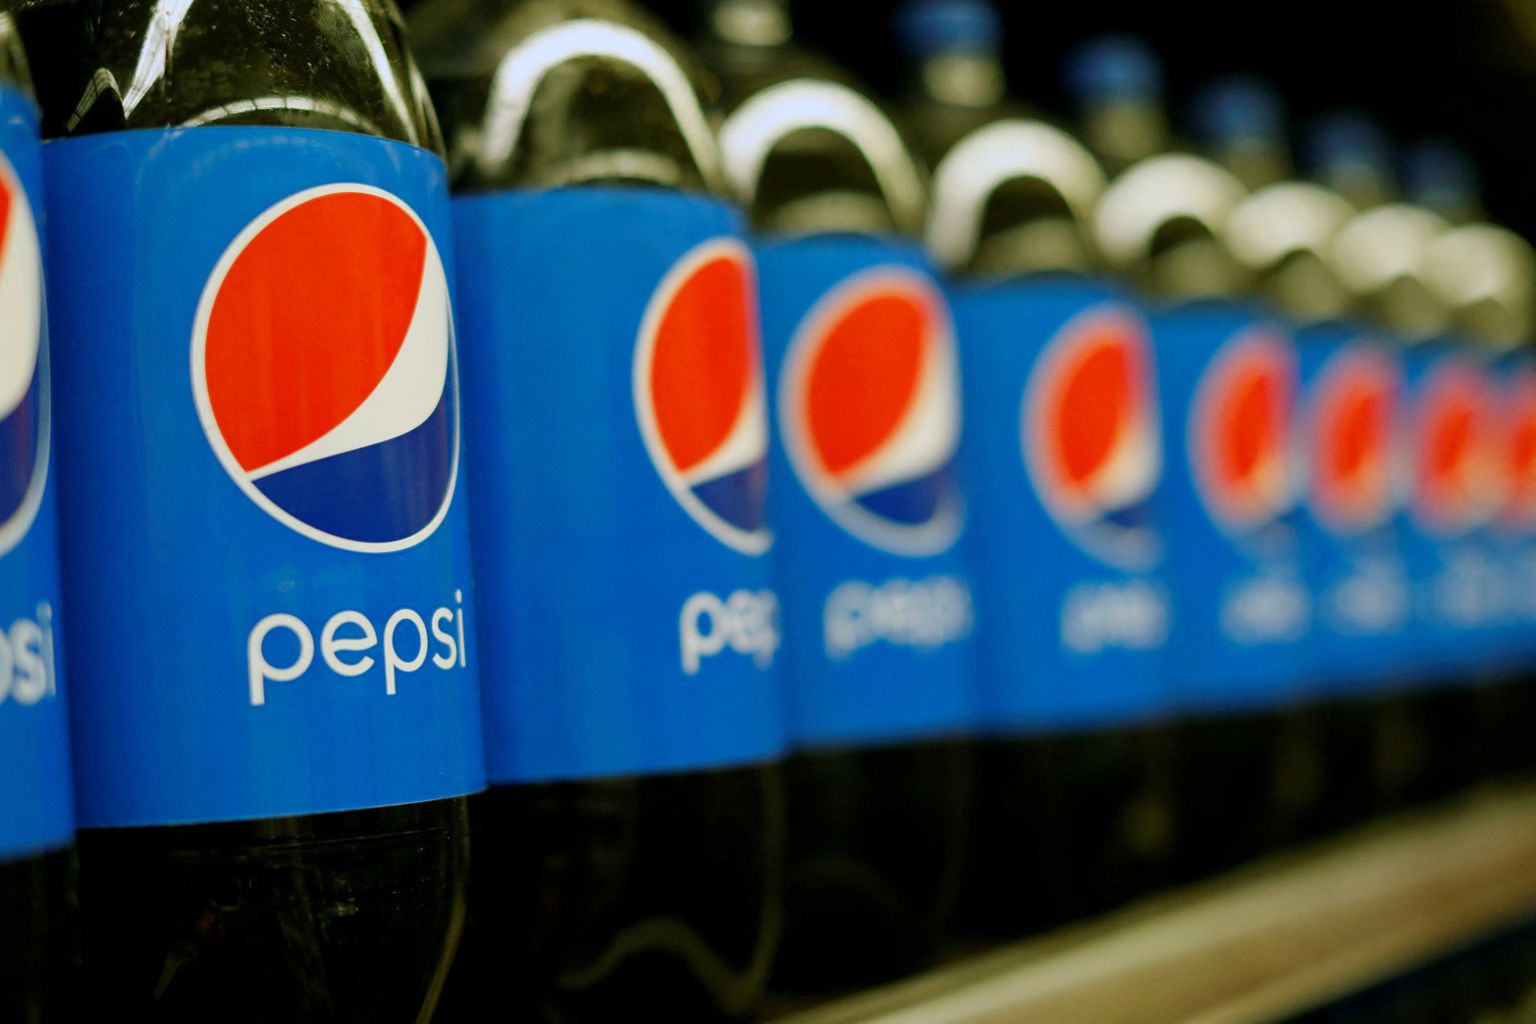 Lisaks Pepsi koolajoogile toodab PepsiCo ka näiteks Lays'i kartulikrõpse.